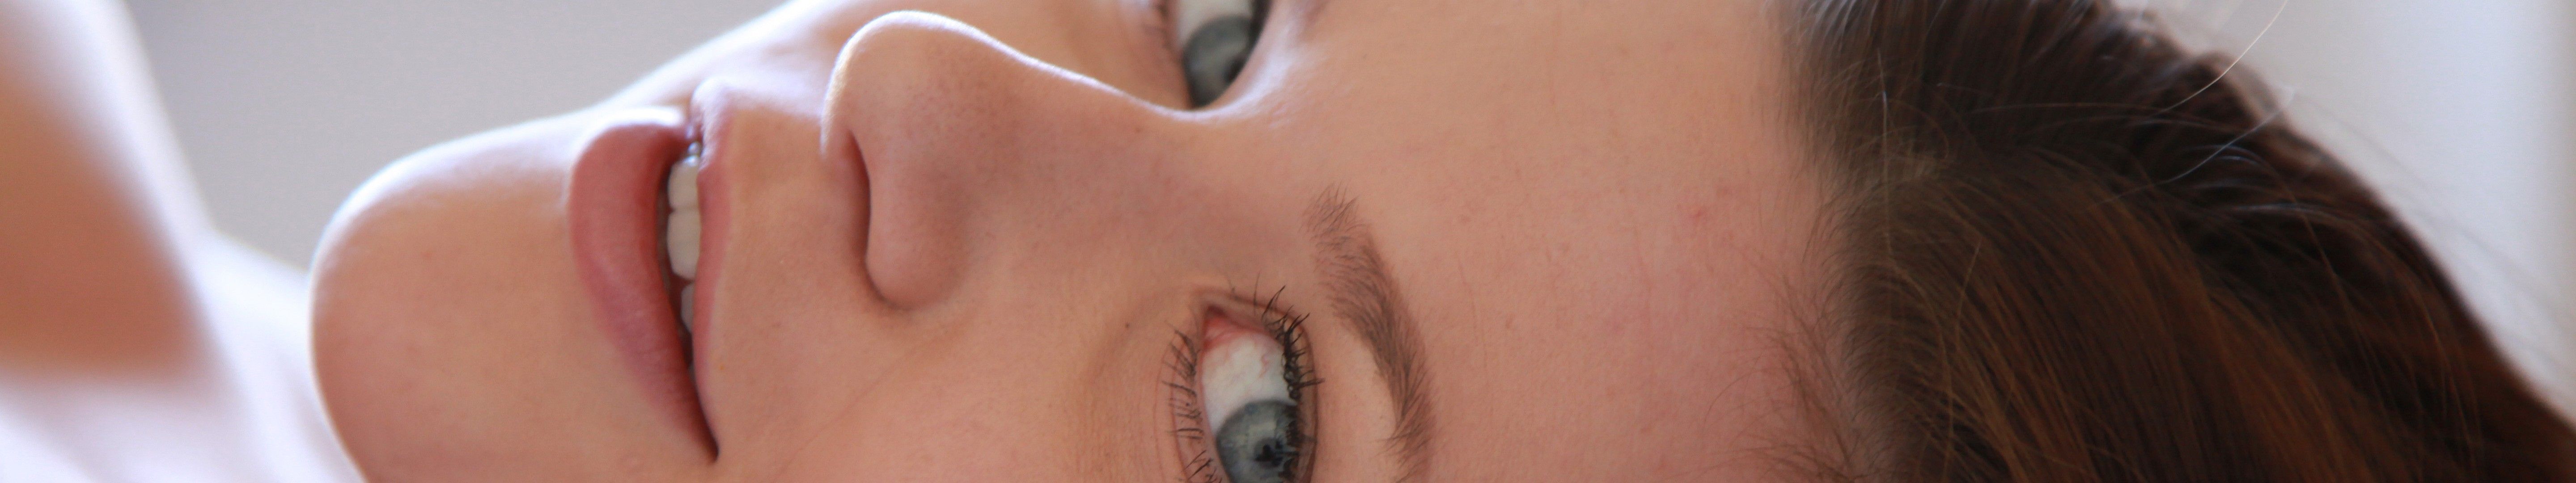 Triple Screen Women Wide Angle Face Blue Eyes Brunette Wallpaper:5760x1080